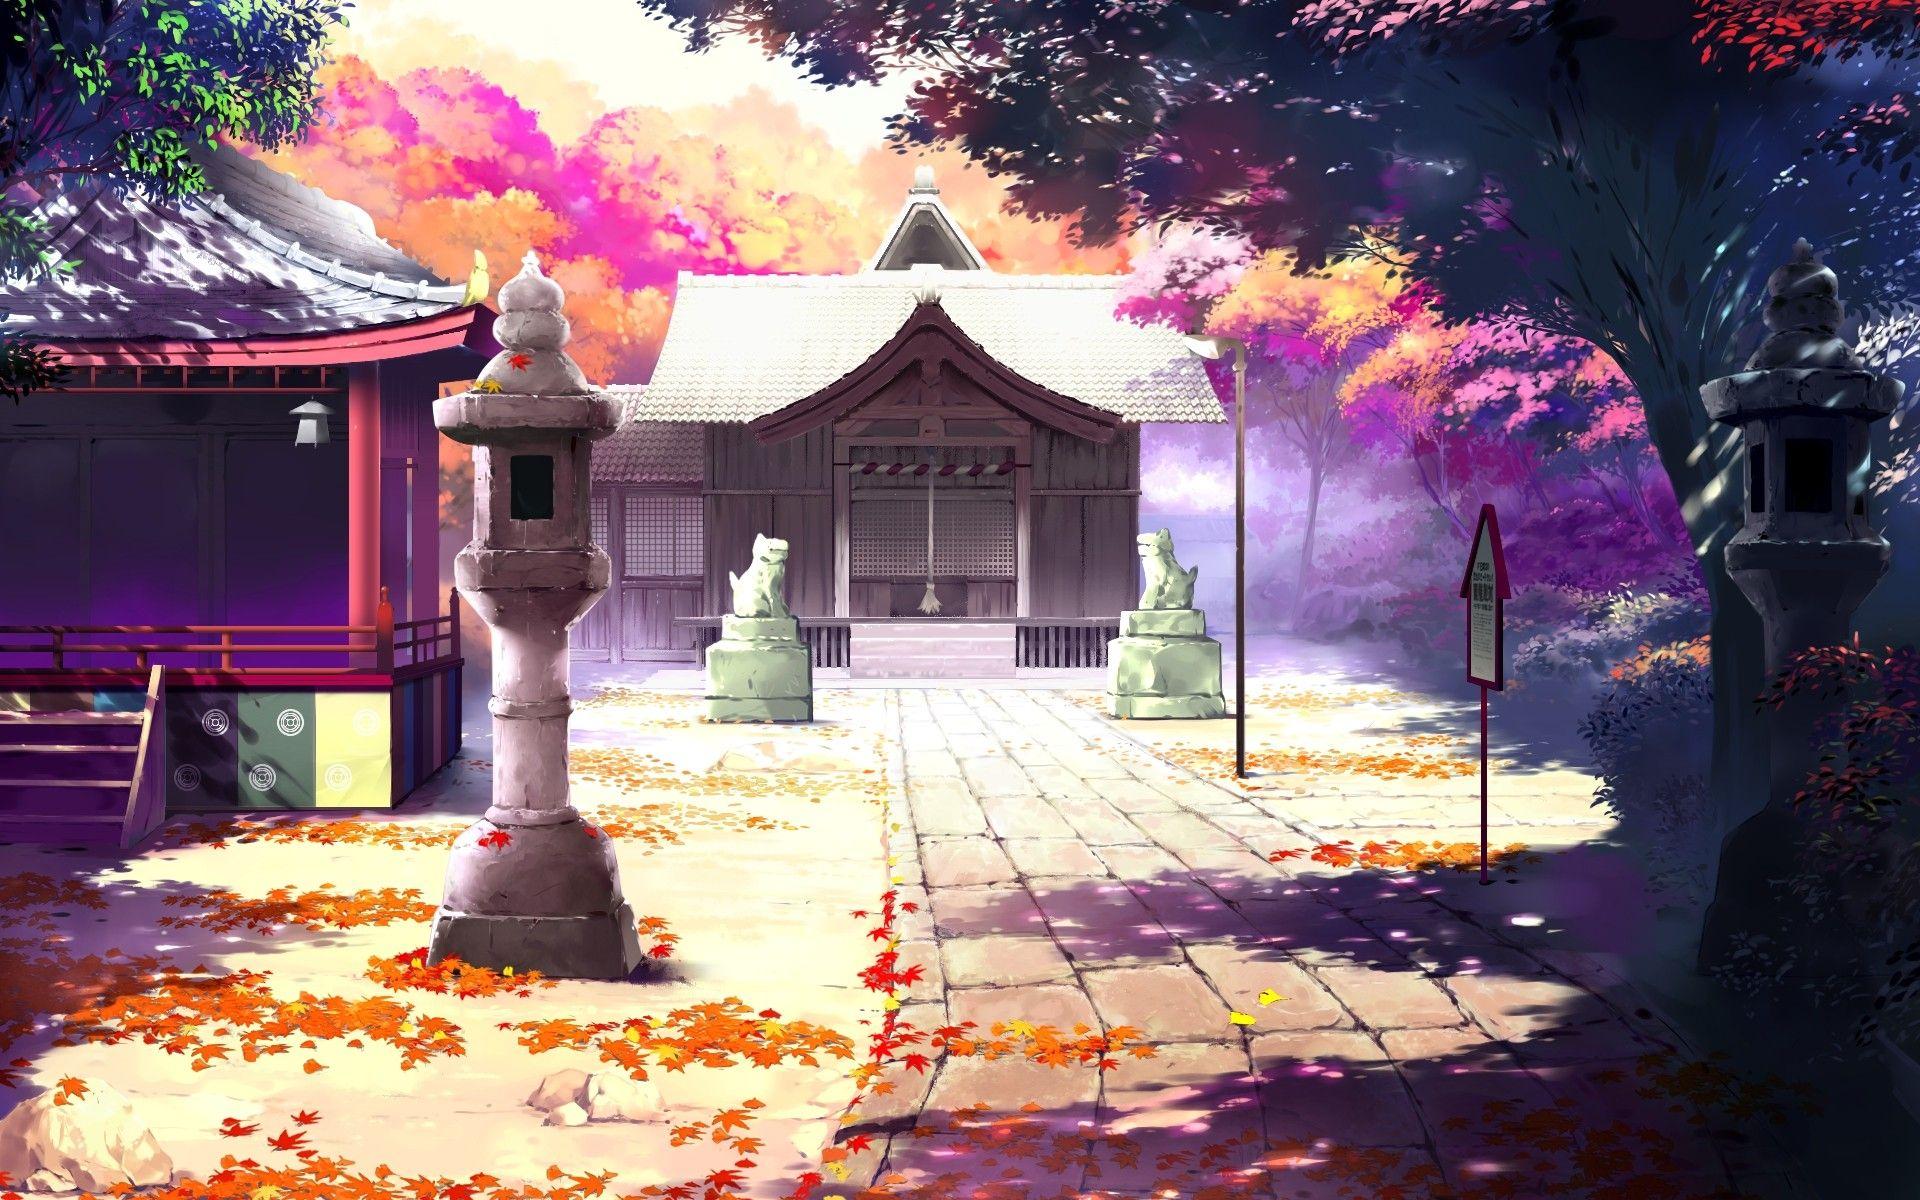 Anime Wallpaper. Anime scenery wallpaper, Scenery wallpaper, Anime scenery